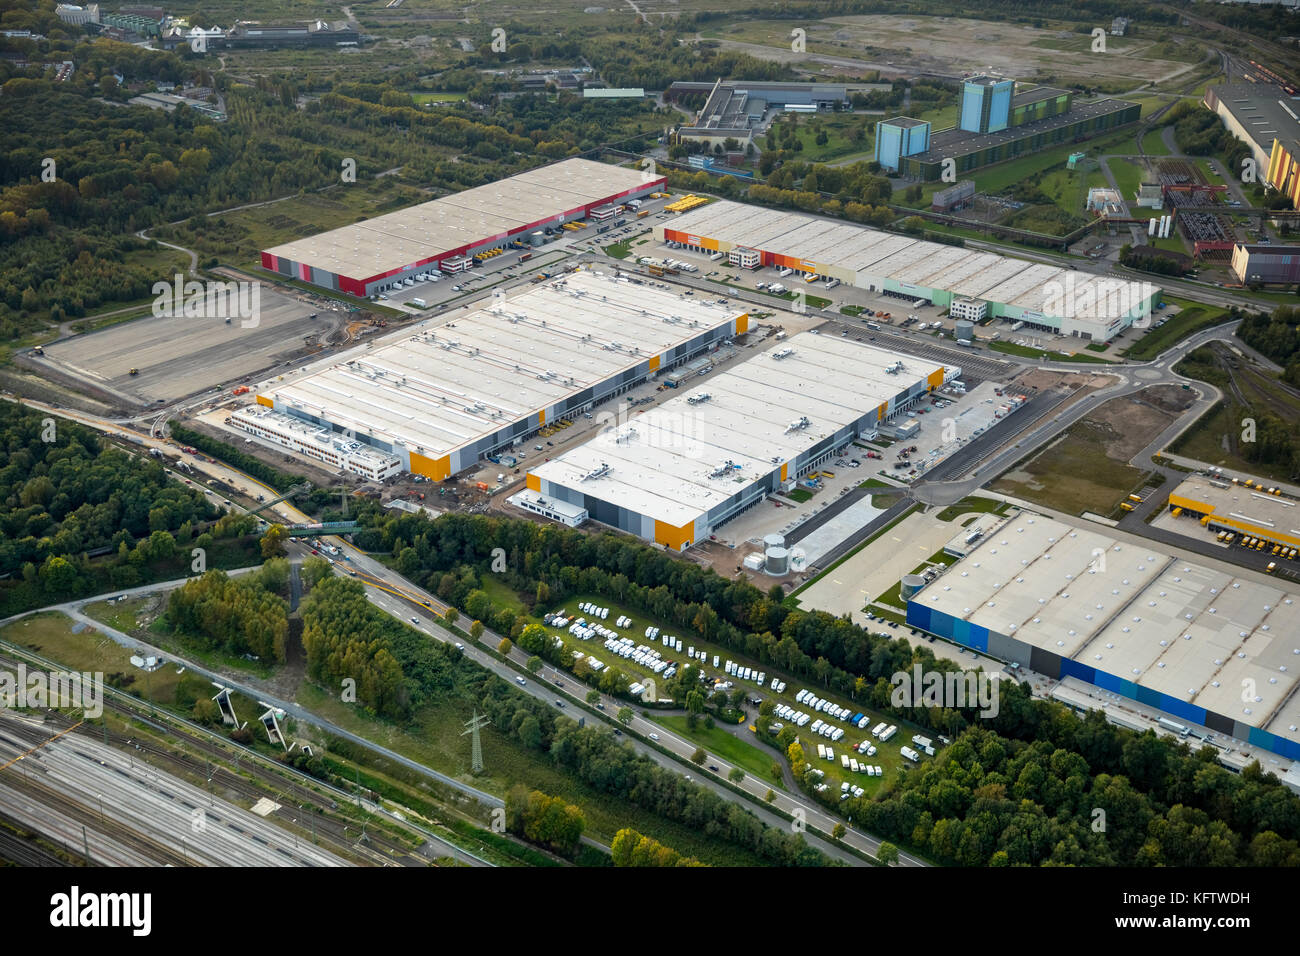 Le centre logistique Amazon 'DMC2' de Dortmund est situé sur le site de l'ancienne Westfalenhütte, Goldbeck construction, Dortmund, Ruhr, Rhénanie-du-Nord-Wes Banque D'Images